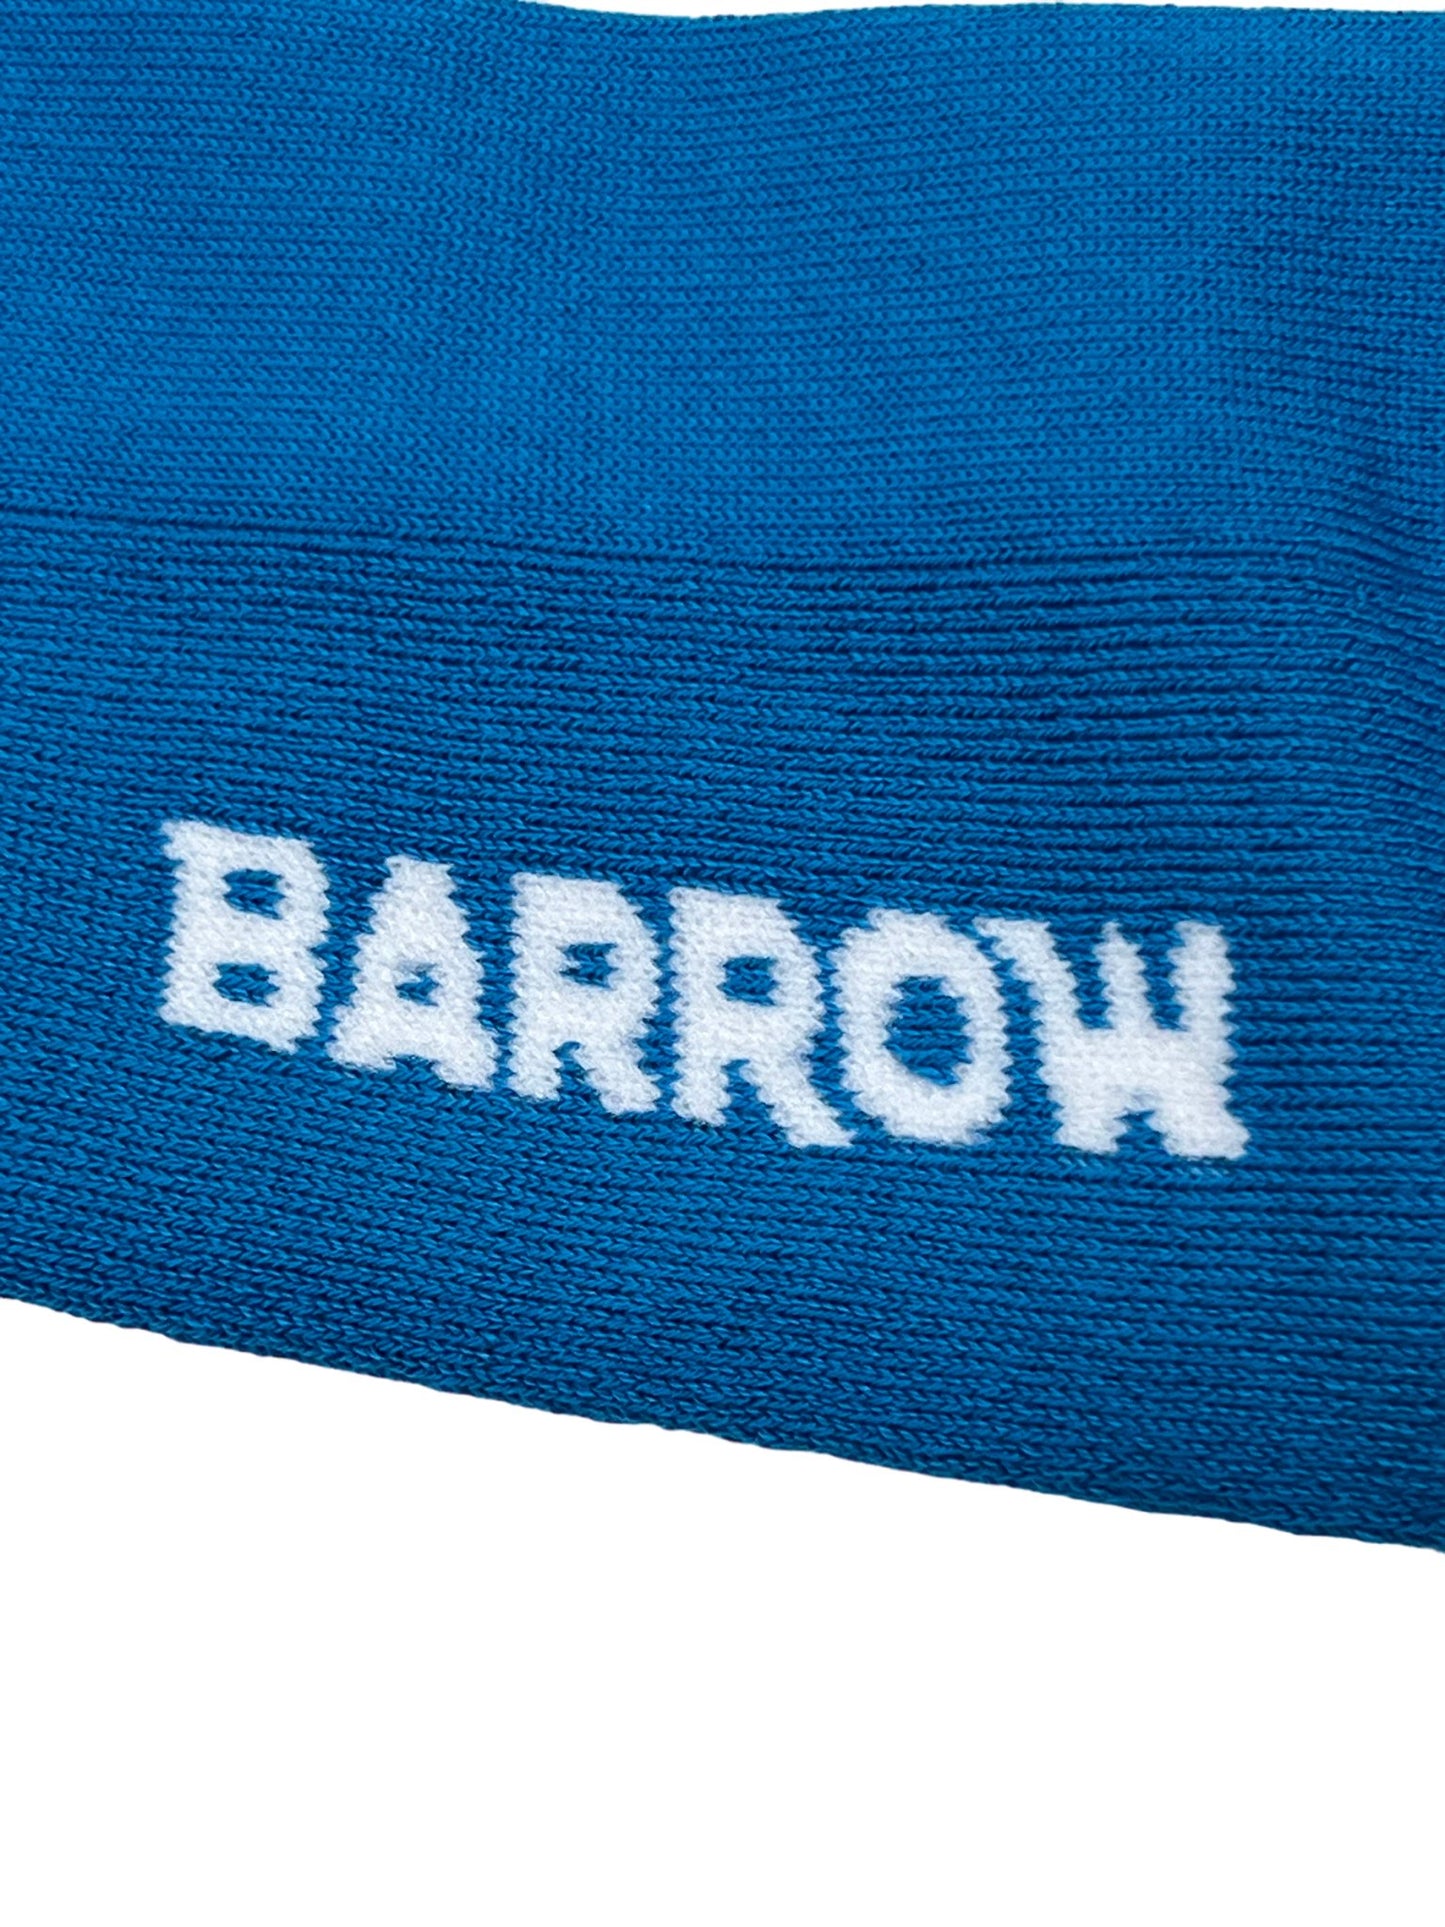 BARROW S4BWUASO140 SOCKS UNISEX